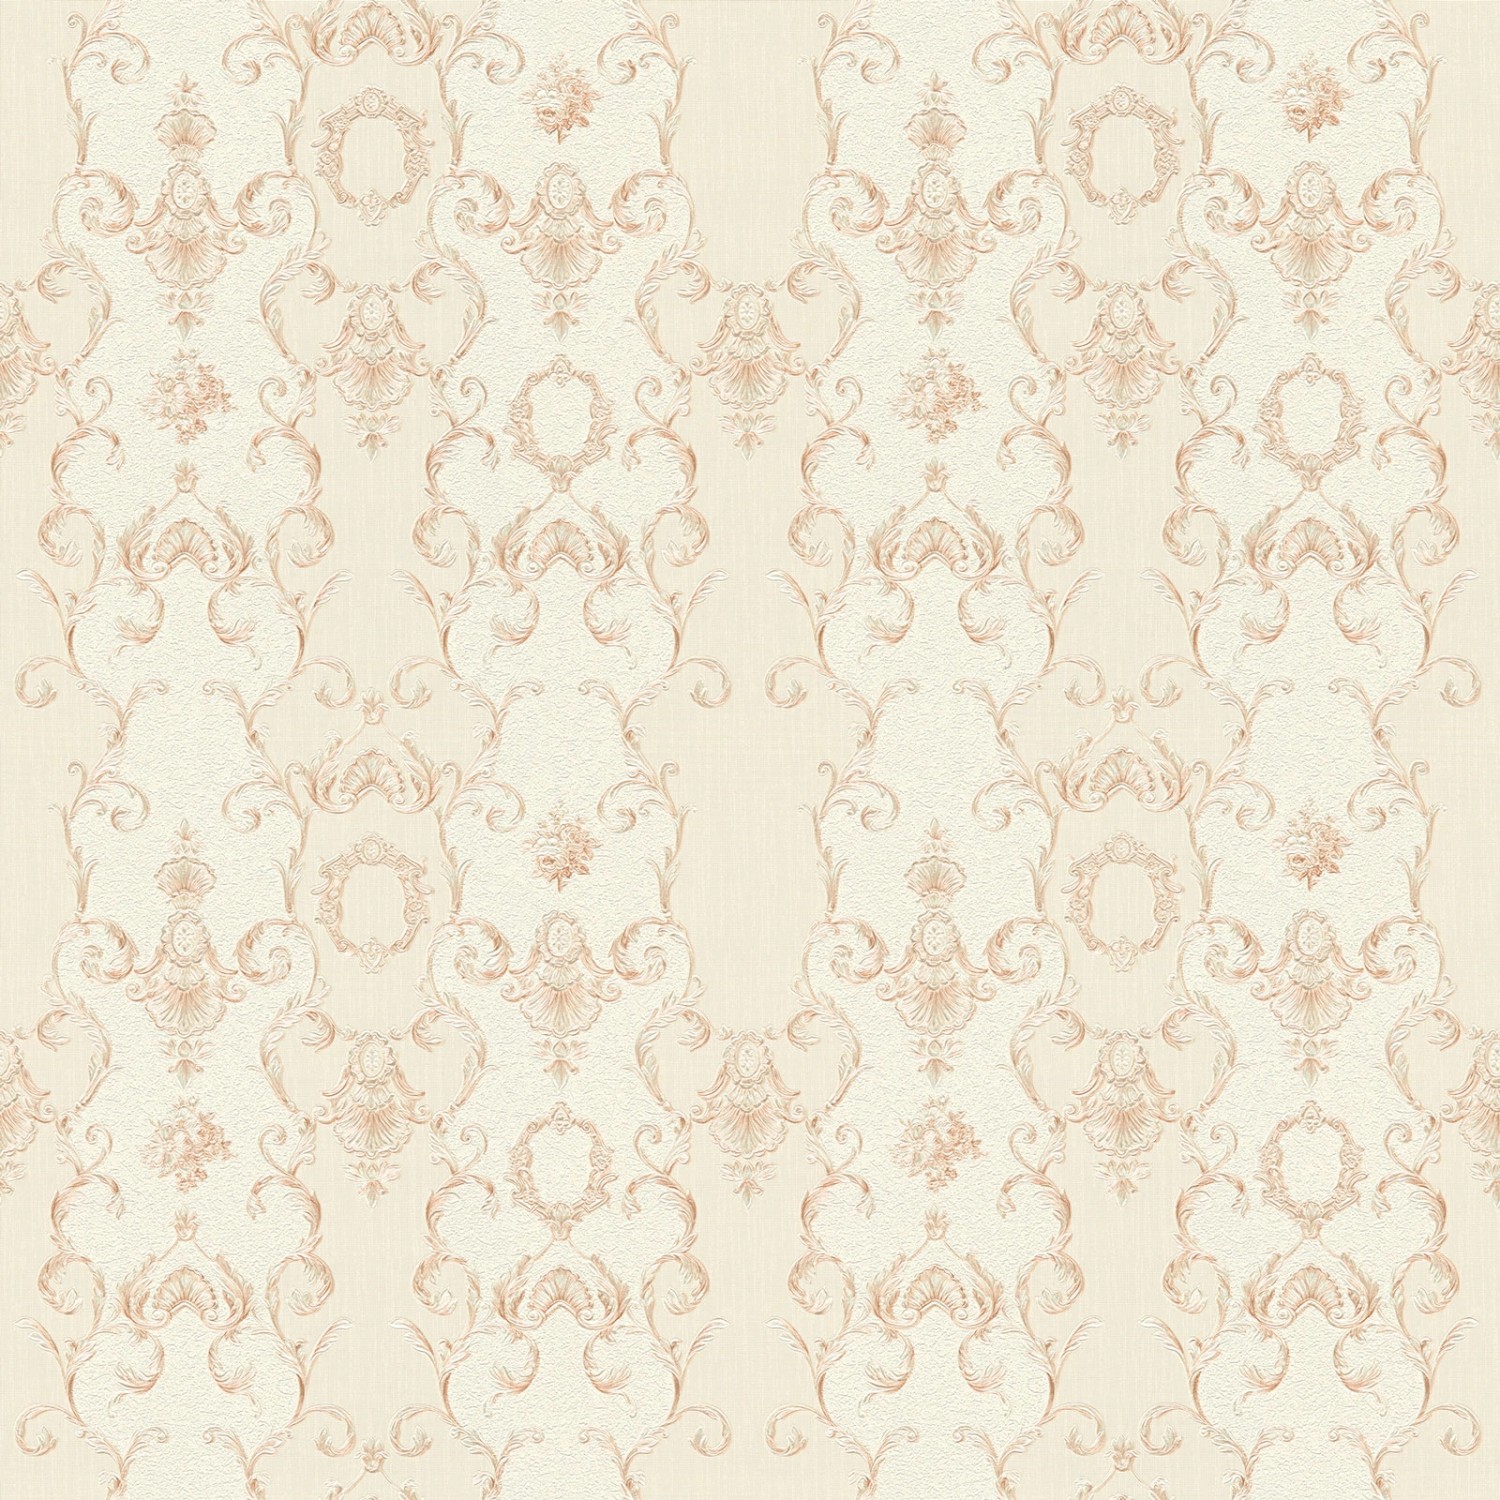 Bricoflor Rosegold Tapete Französisch Romantische Schlafzimmer und Wohnzimmer Vliestapete mit Barock Muster Ornament Wan